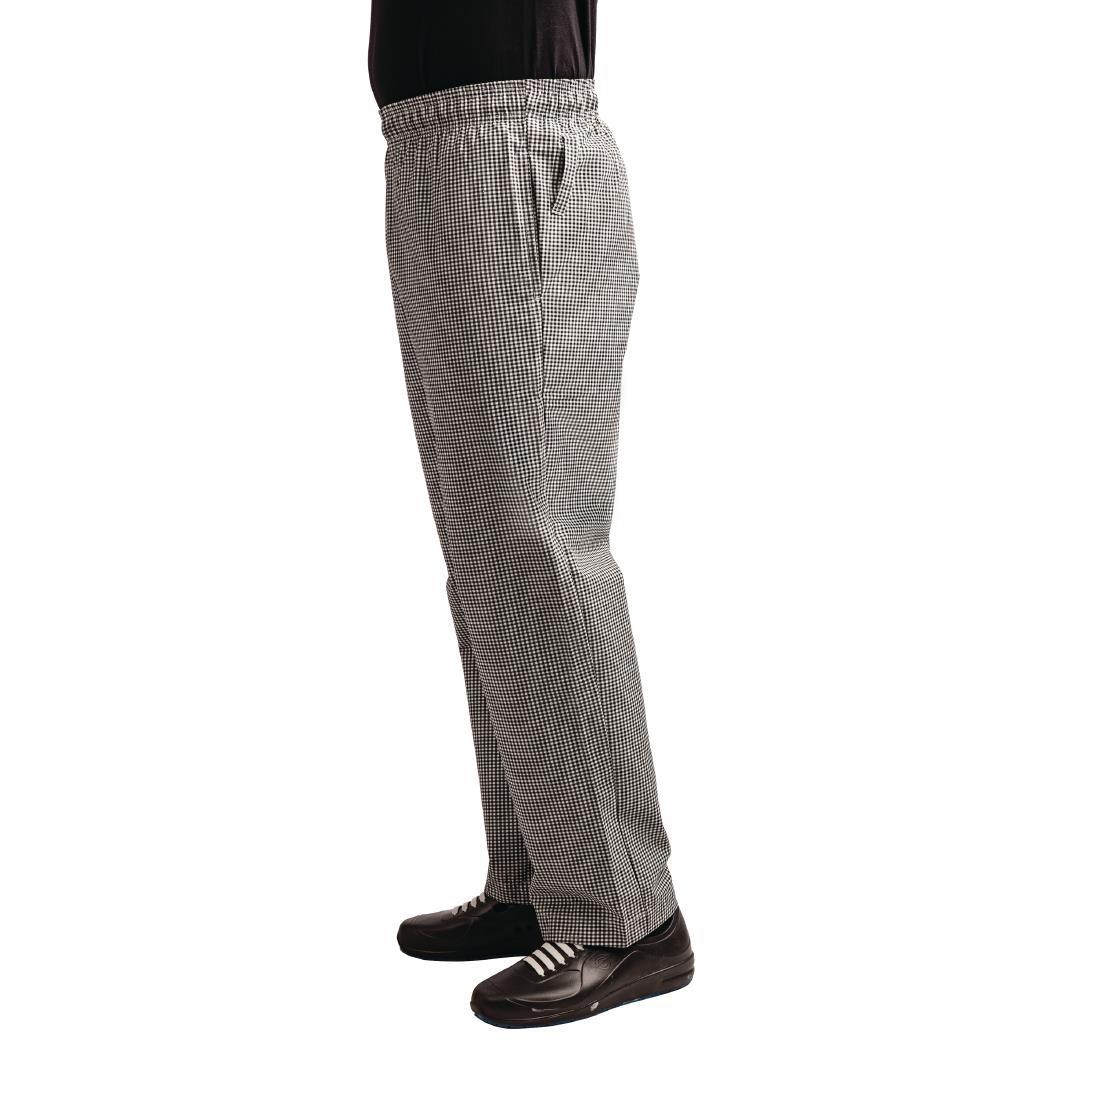 Whites Easyfit Trousers Teflon Black Check XL - A026T-XL  - 3